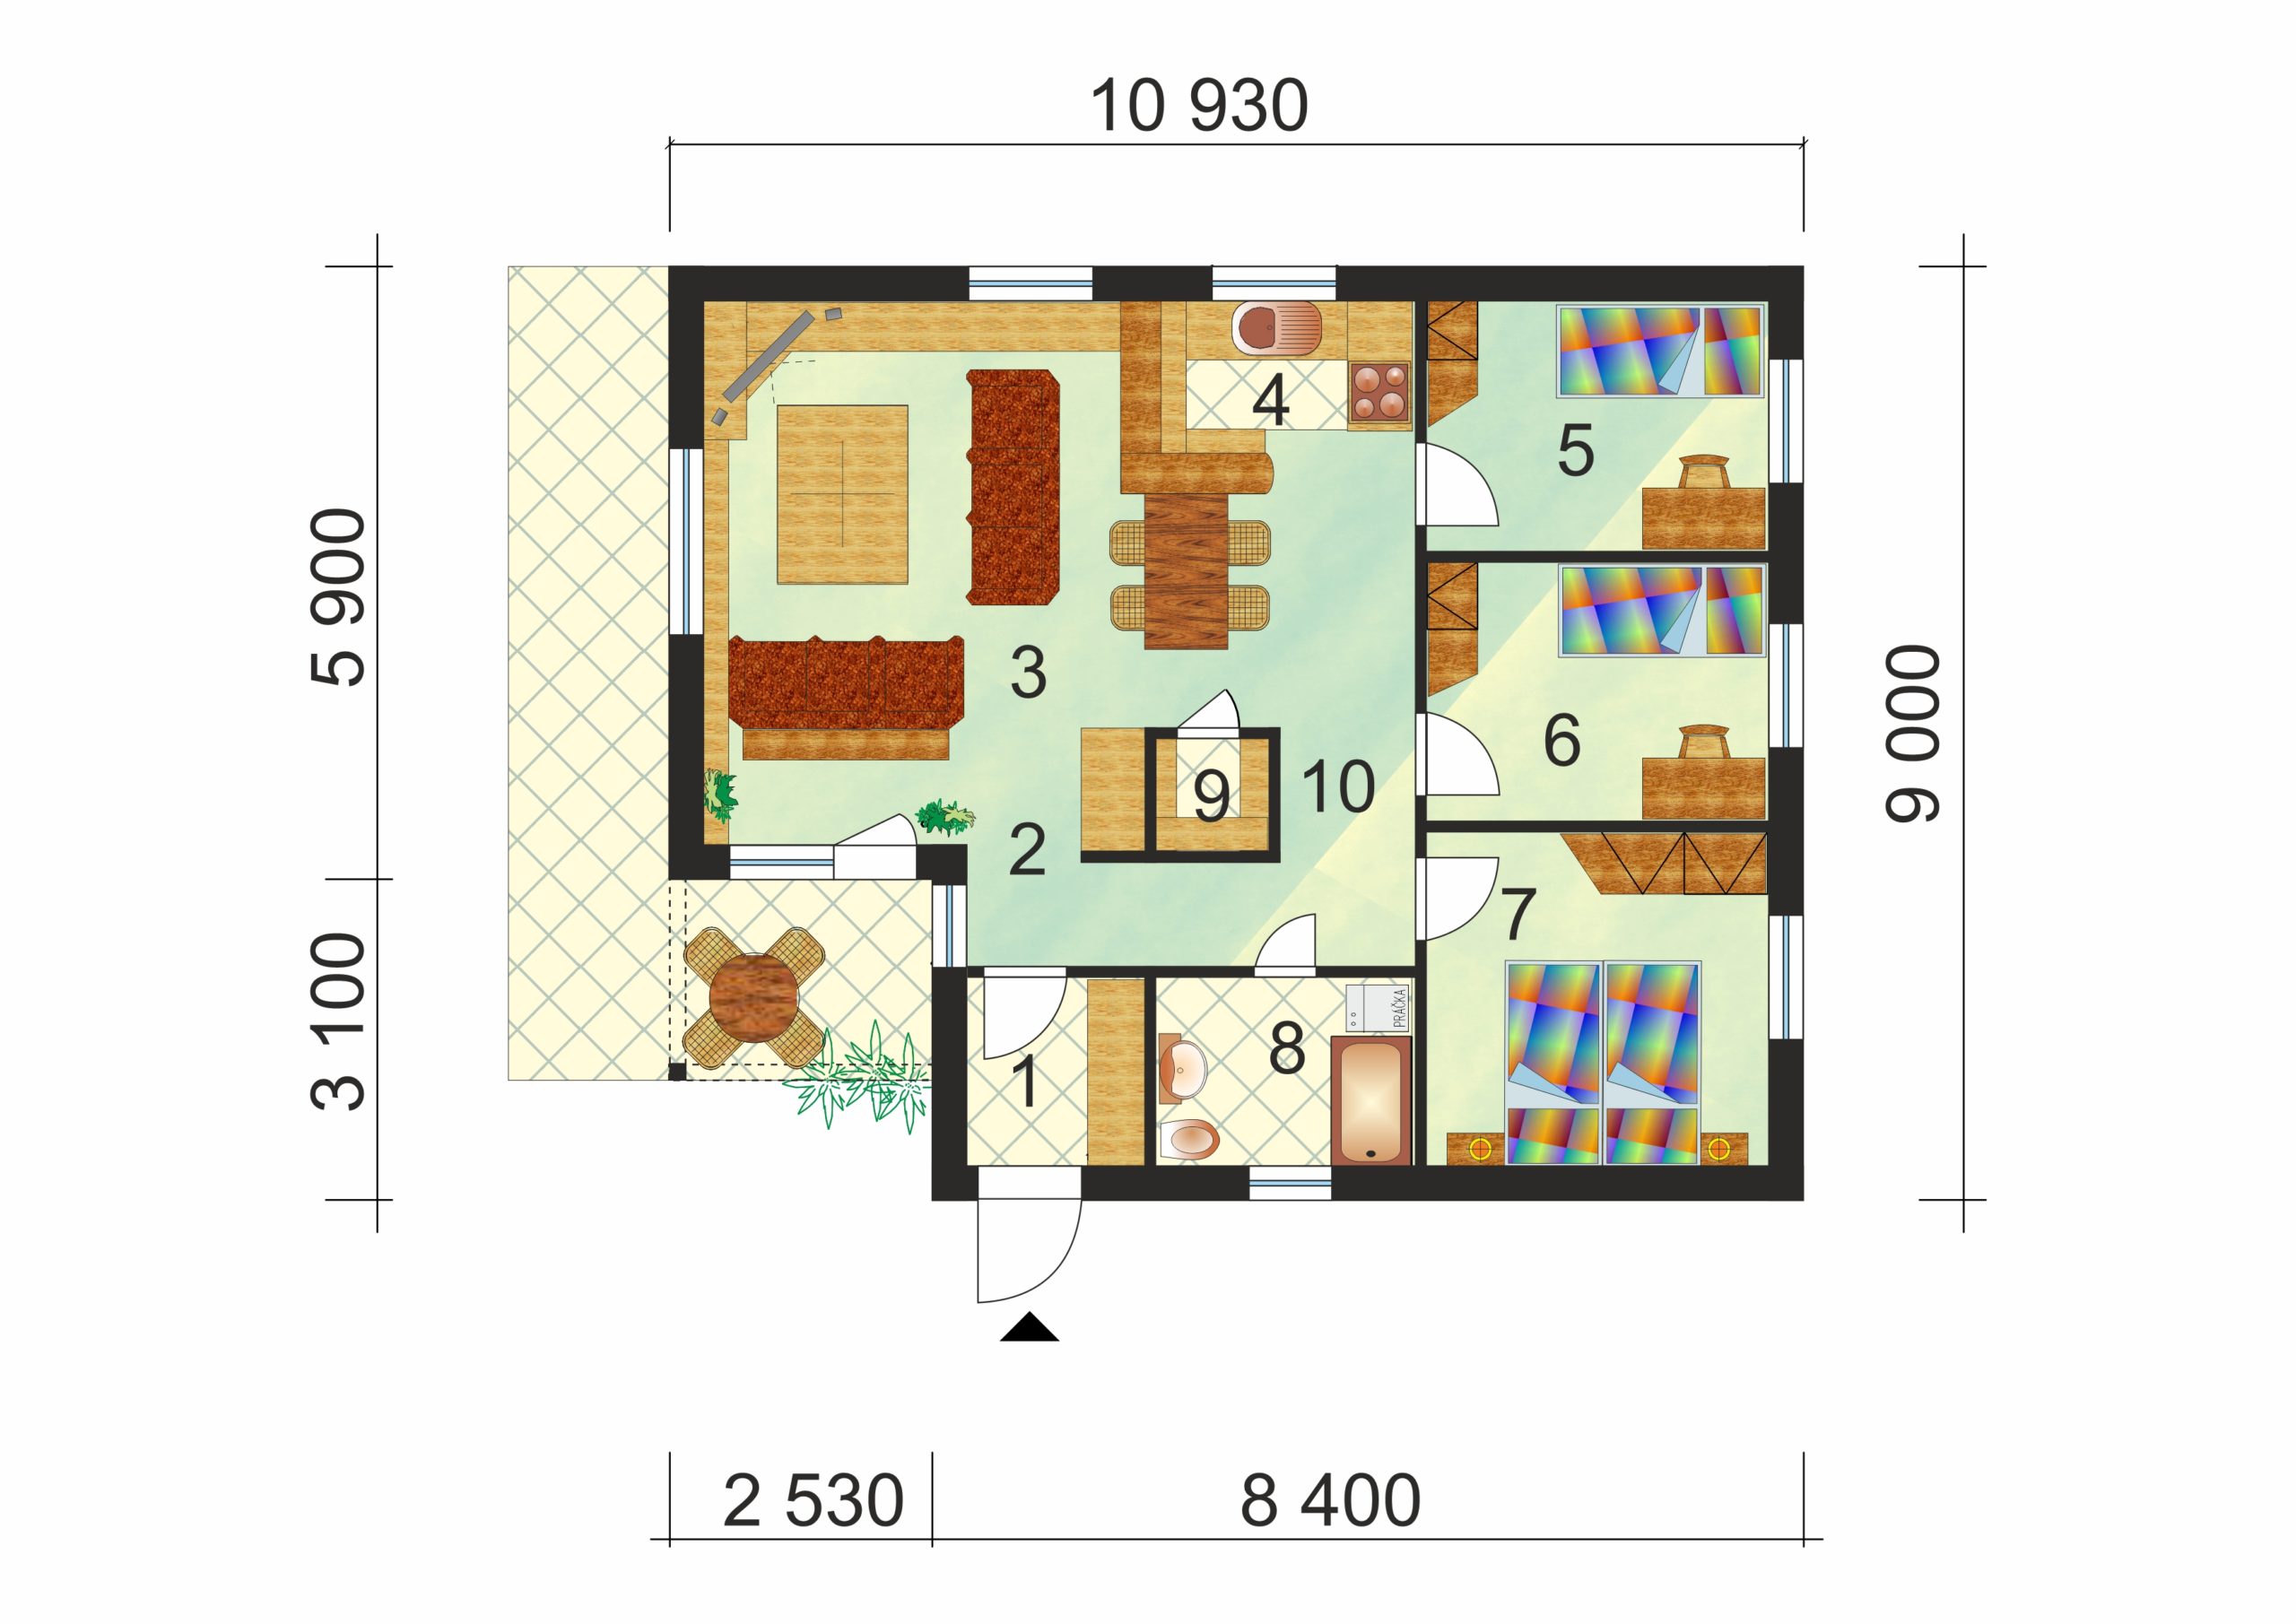 Négyszobás, téglalap alapú bungaló - sz.39, alaprajza 2022